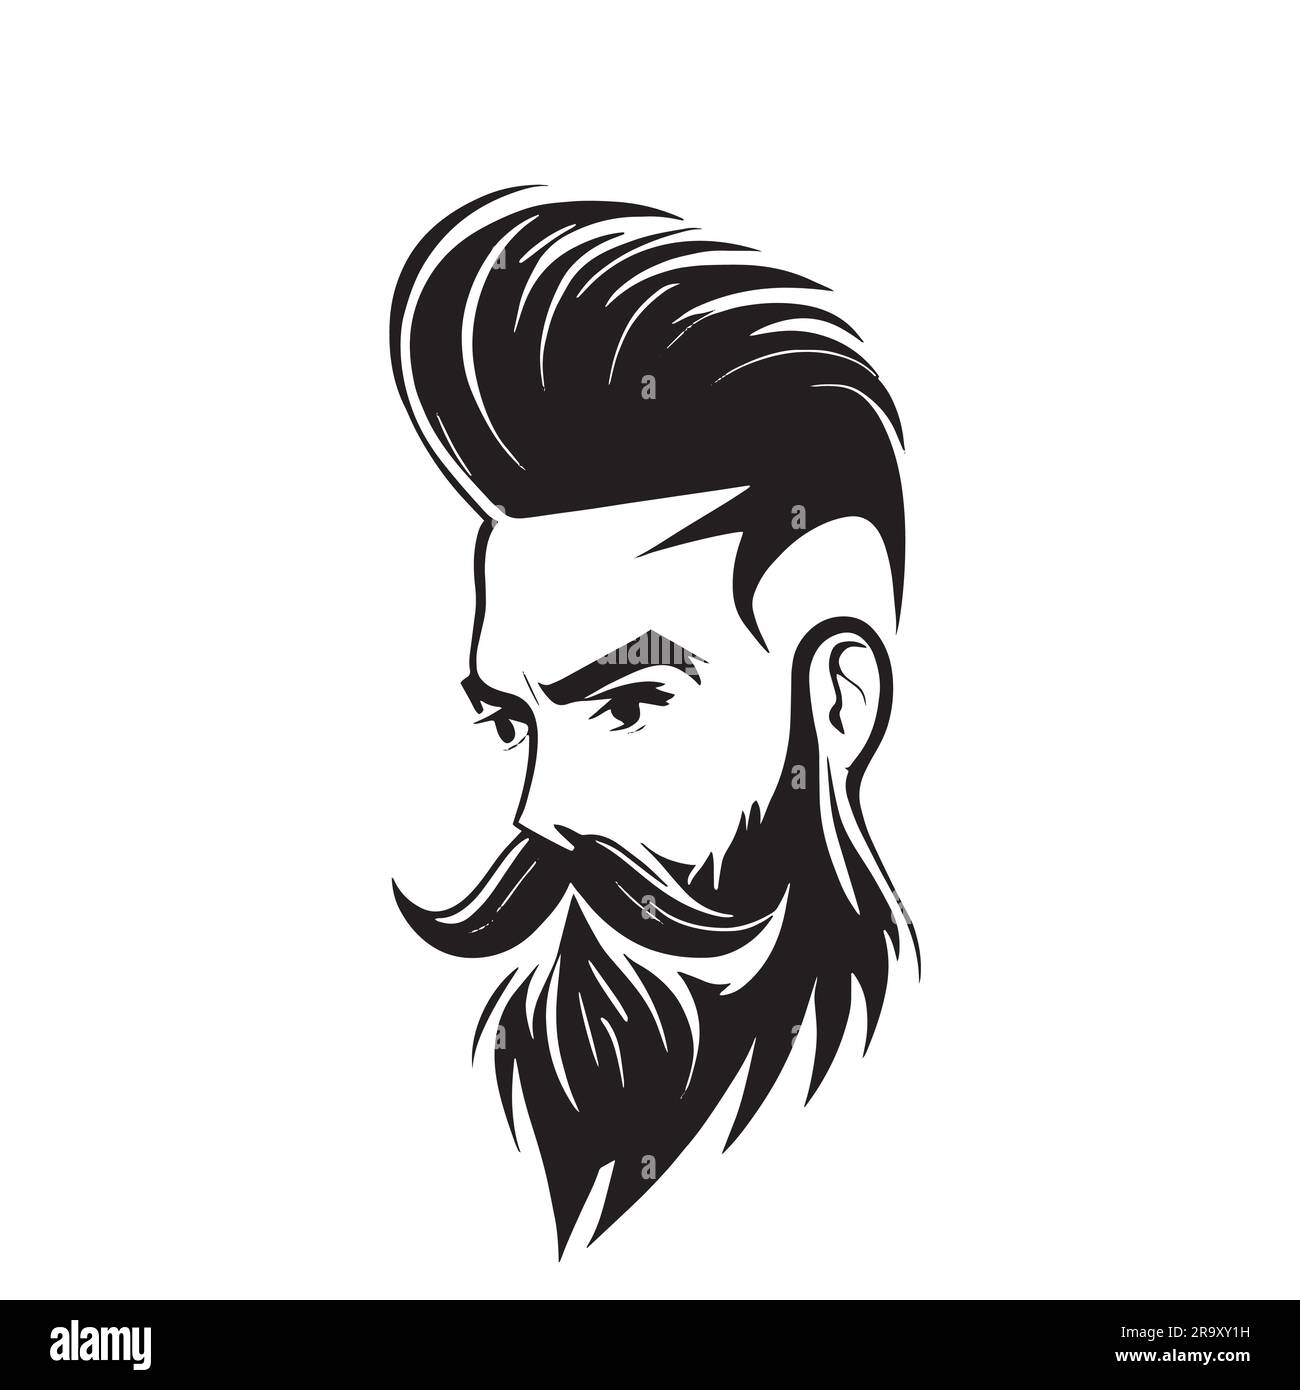 logo type illustration for men's hairdresser Stock Vector